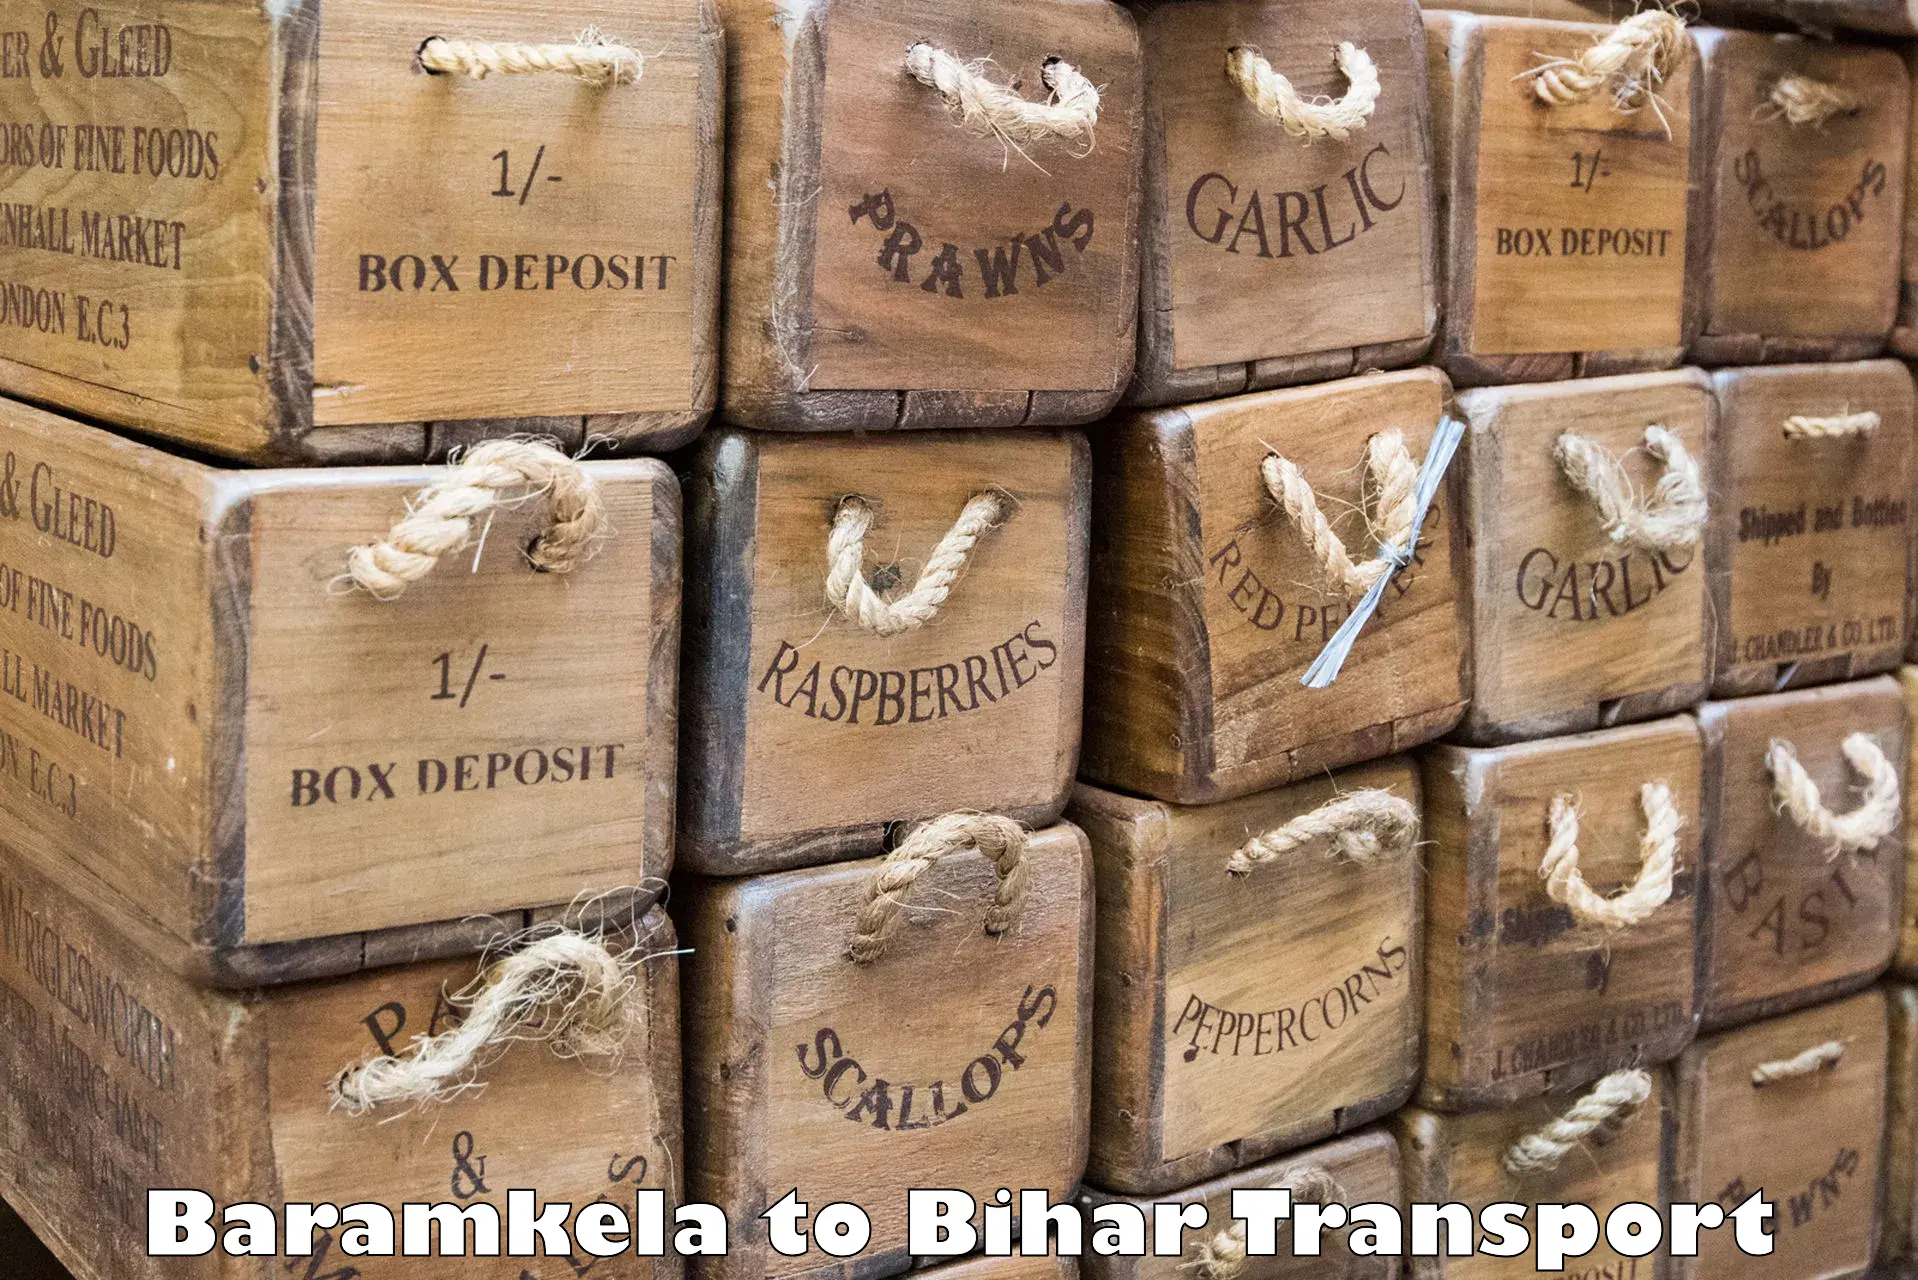 Express transport services Baramkela to Tekari